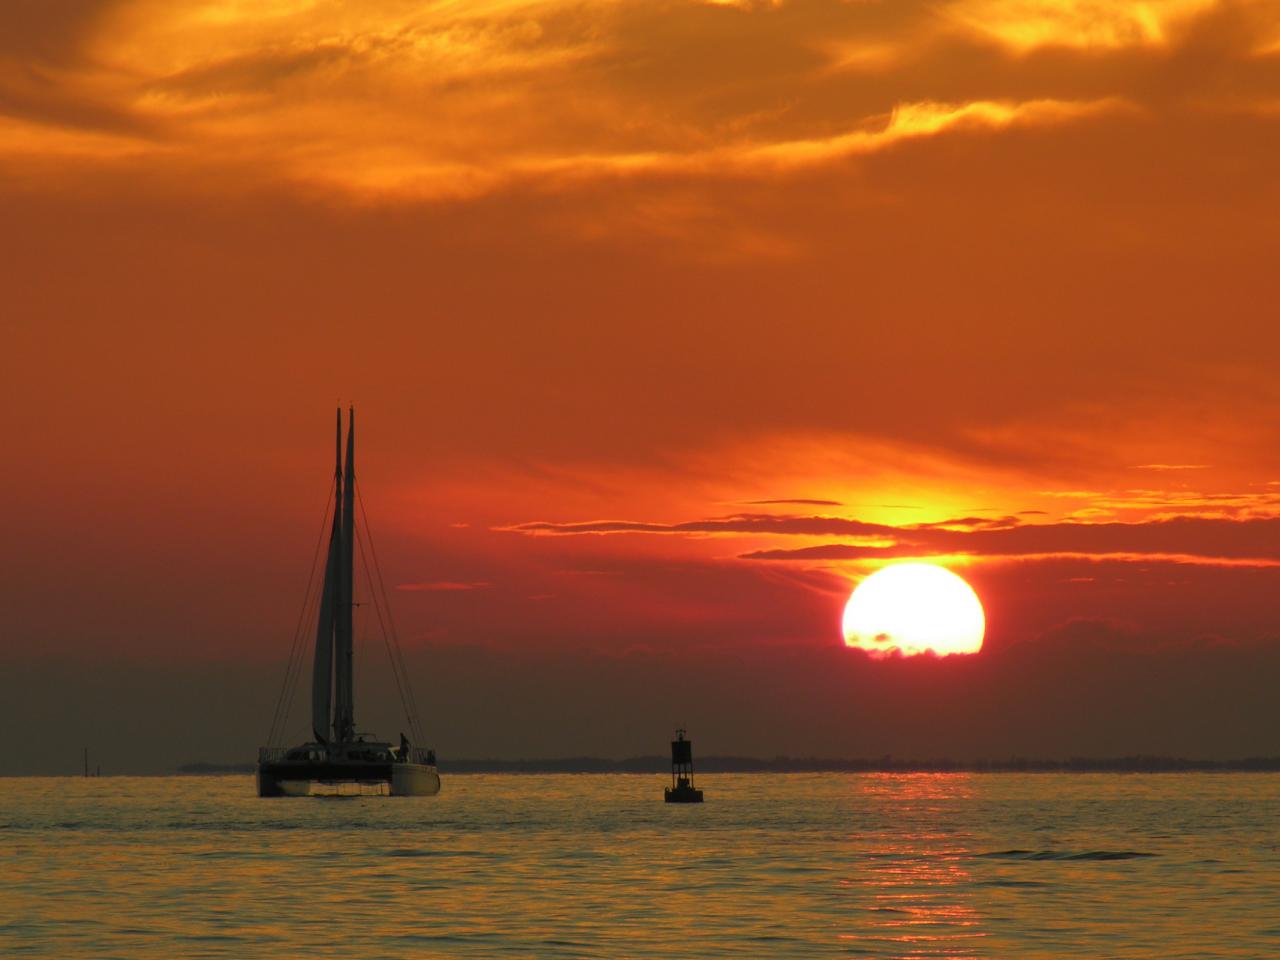 обои Яхта в море на закате фото